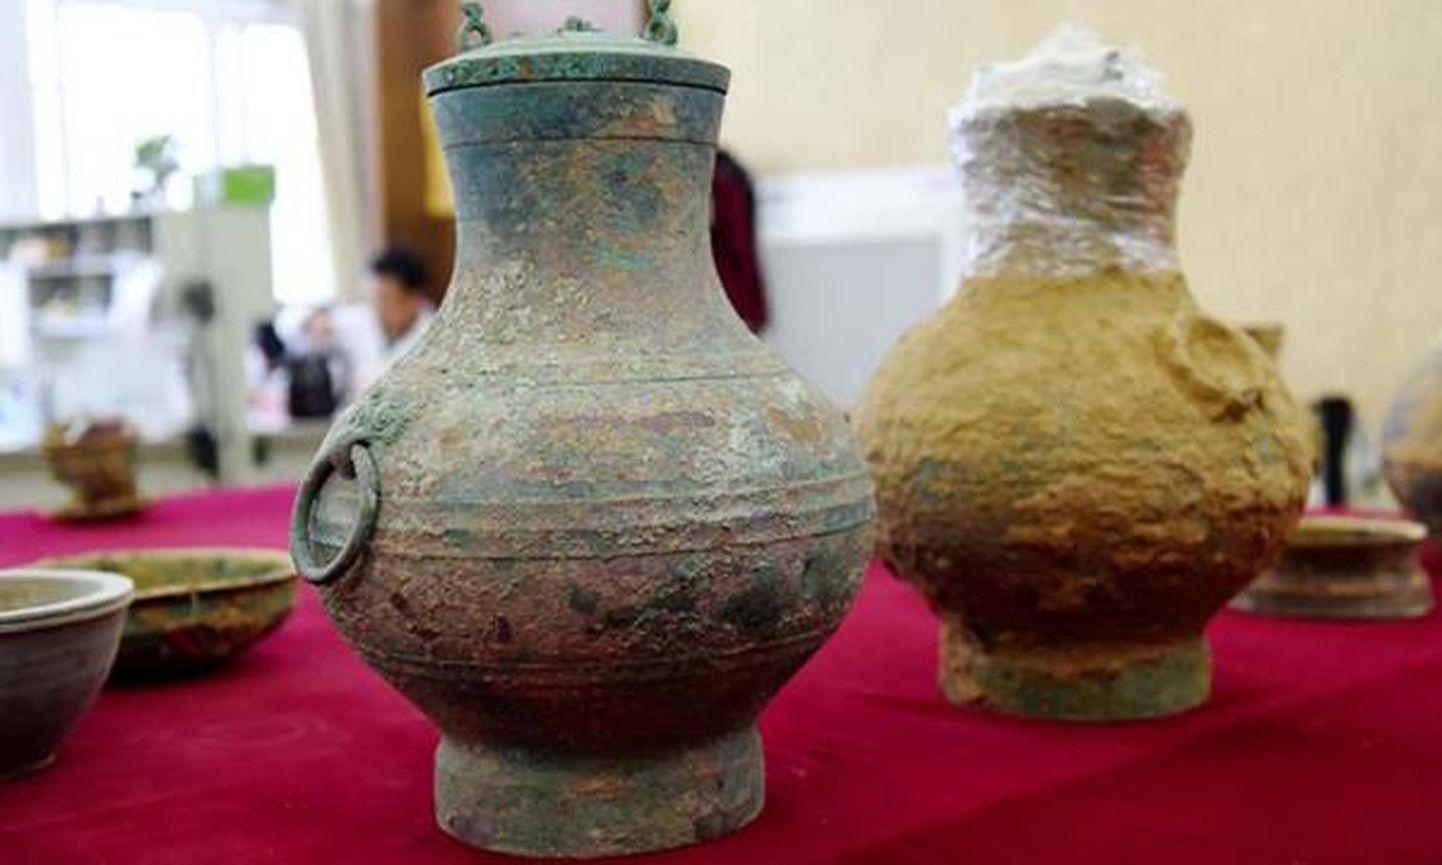 Hiina arheoloogid leidsid Luoyangi hauakambrist pronksanuma, milles oli vedelik